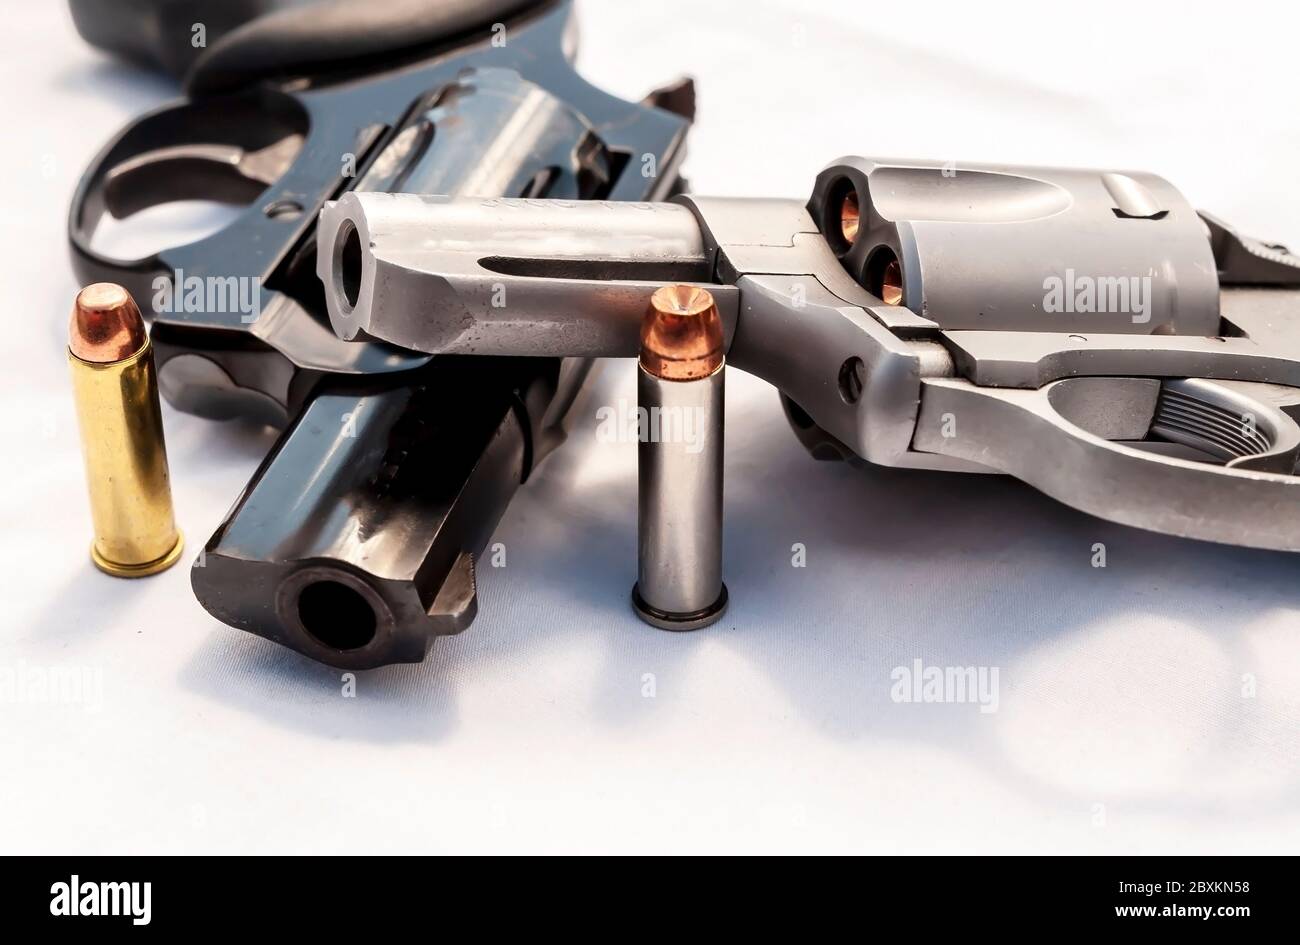 Zwei Revolver, ein 357 Magnum und ein 38 Special mit hohlen Punktkugeln für jeden von ihnen auf weißem Hintergrund Stockfoto